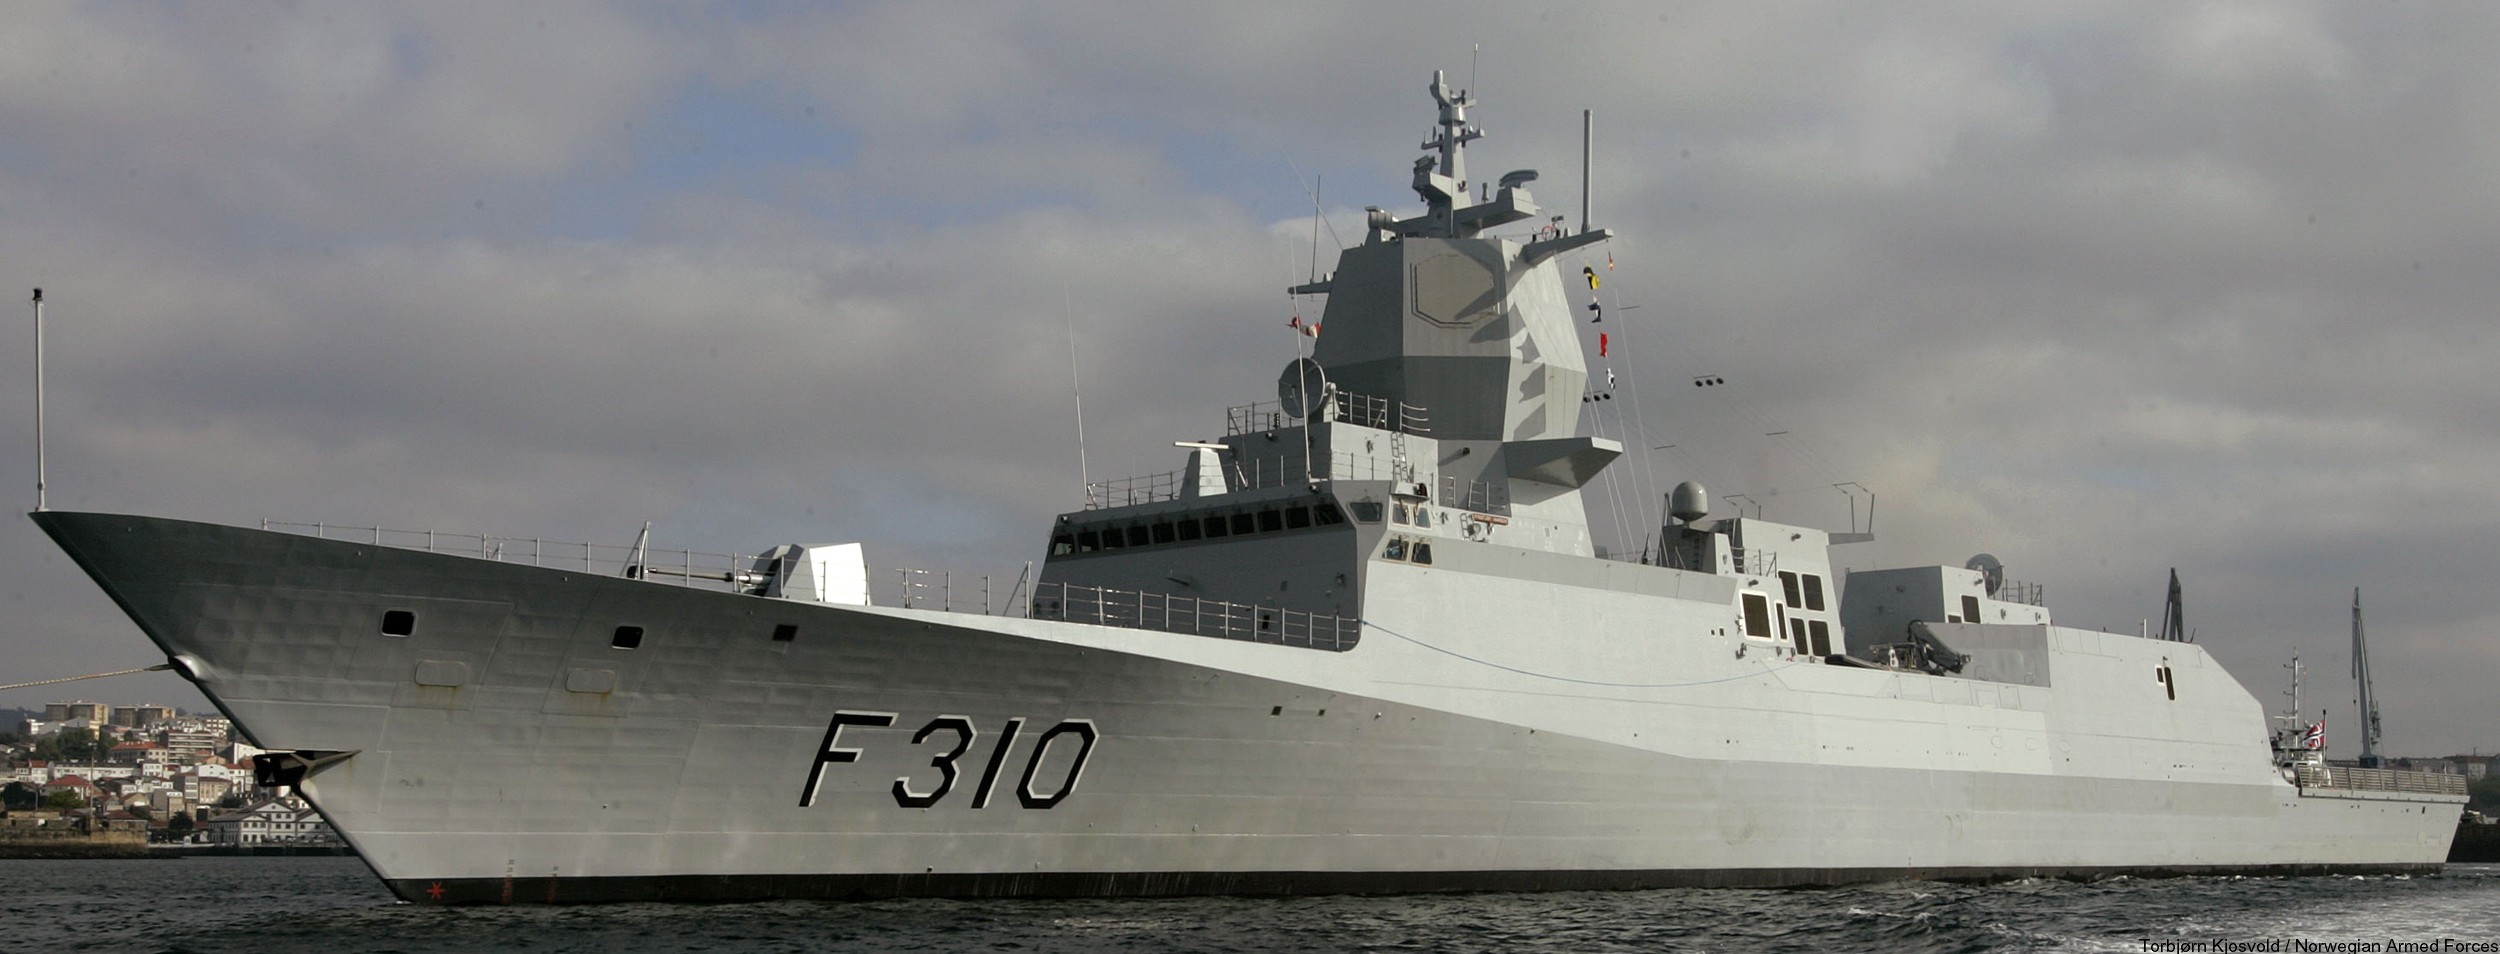 f-310 fridtjof nansen hnoms knm frigate royal norwegian navy sjoforsvaret 72